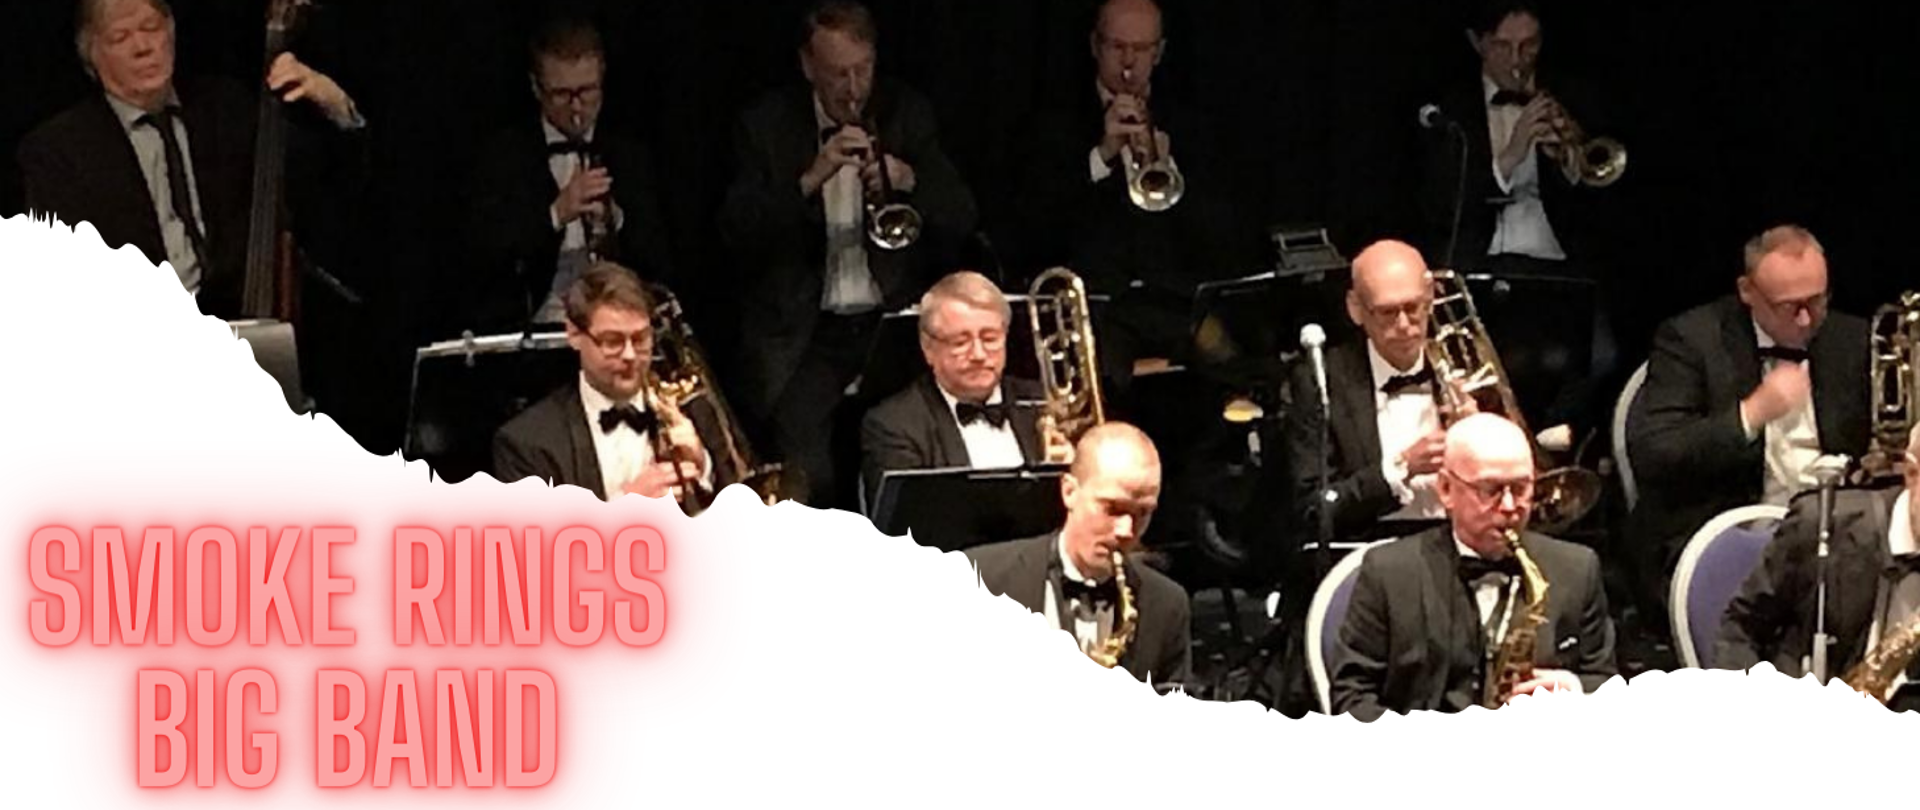 W górnej i prawej części obrazka grupa odświętnie ubranych mężczyzn, którzy grają na dętych instrumentach muzycznych. Po lewej stronie na białym pasku czerwony napis: "Smoke Rings Big Band"